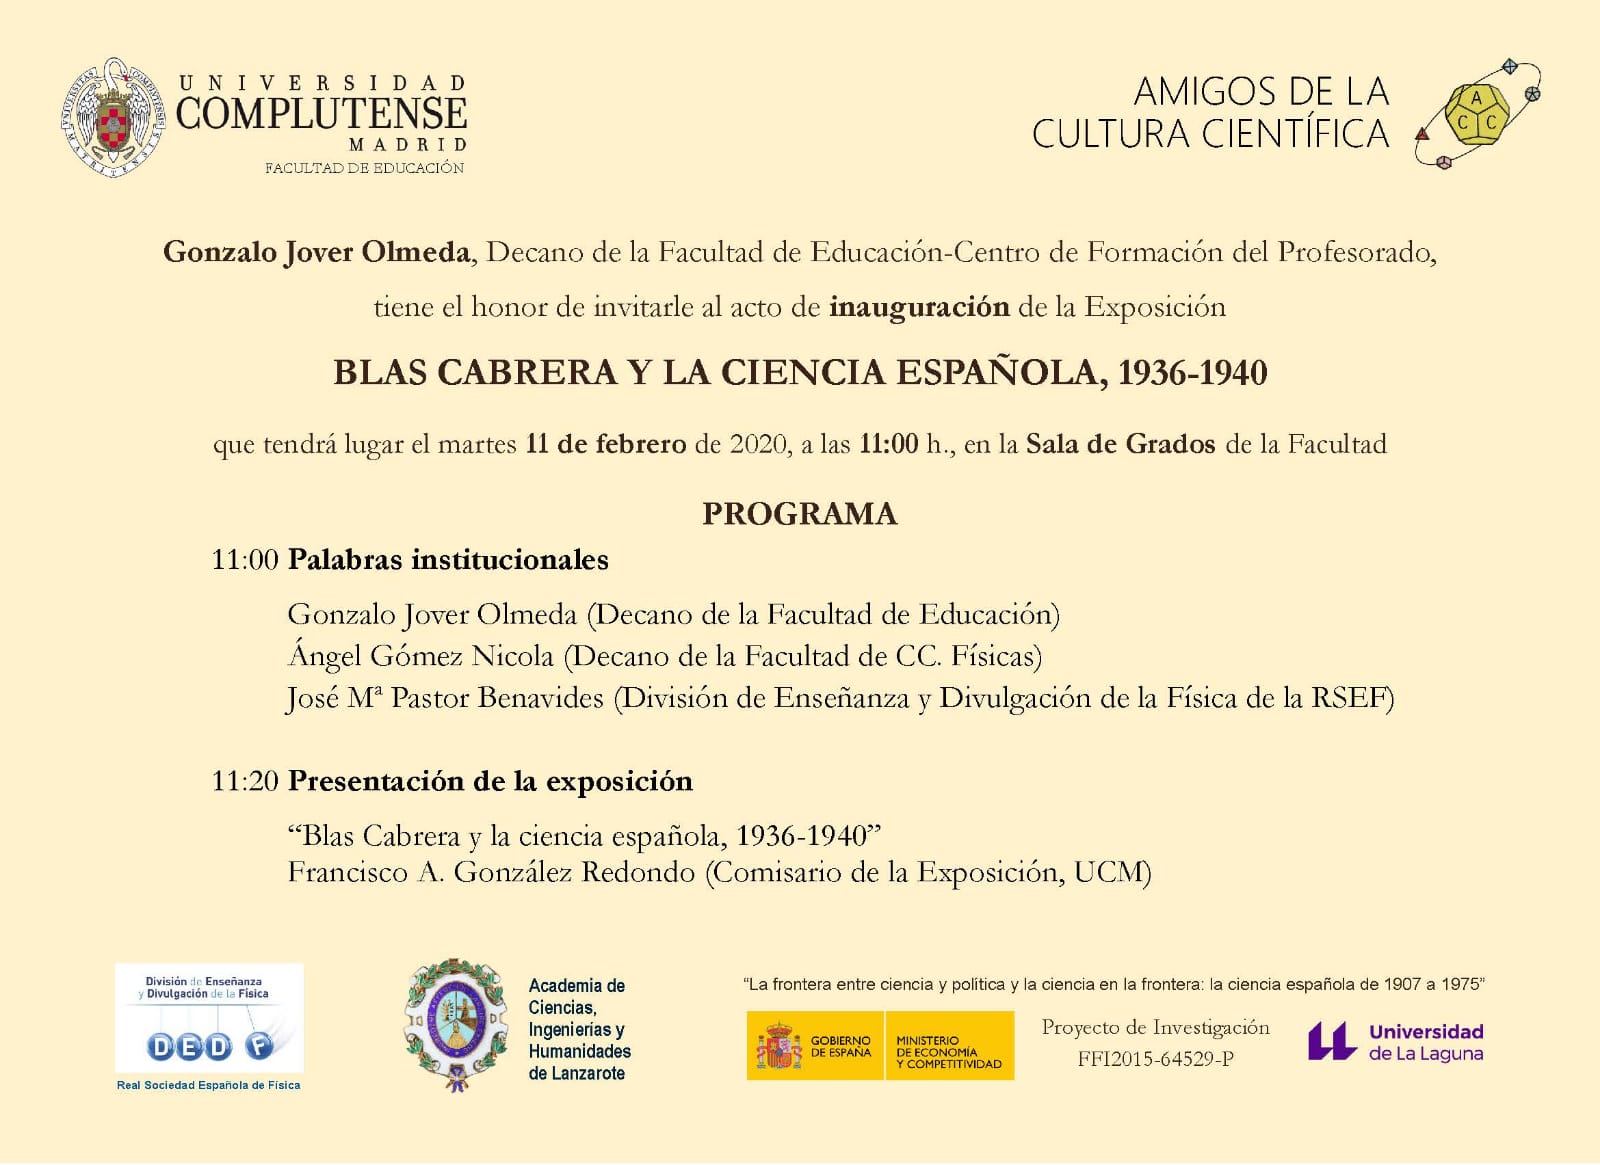 Inauguración de la Exposición: Blas Cabrera y la Ciencia española, 1936-1940